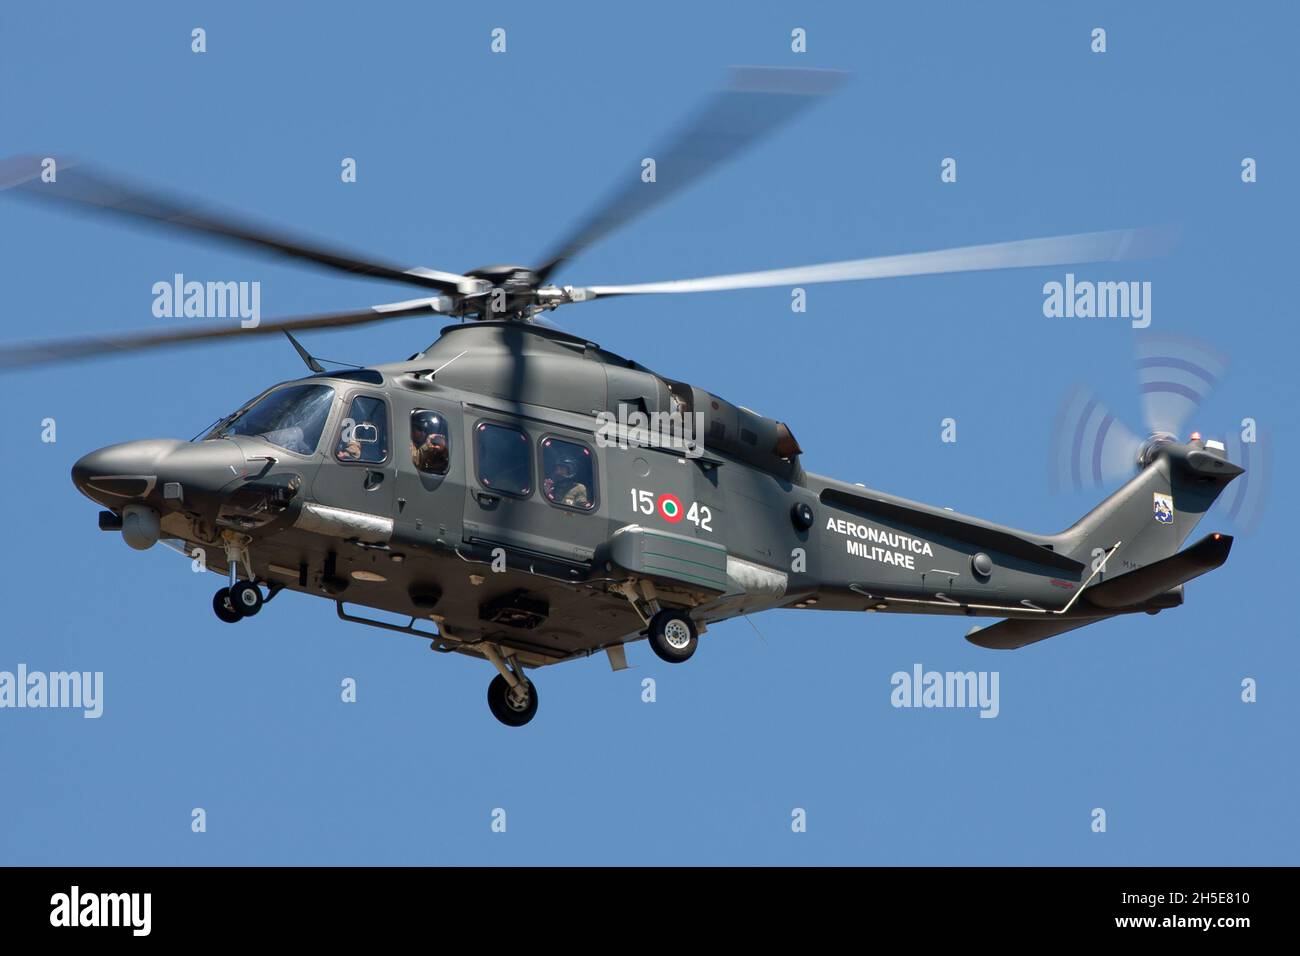 ZELTWEG, ÖSTERREICH - 11. Aug 2013: AgustaWestland AW169 von Aeronautica Militare kommt zur Landung Stockfoto